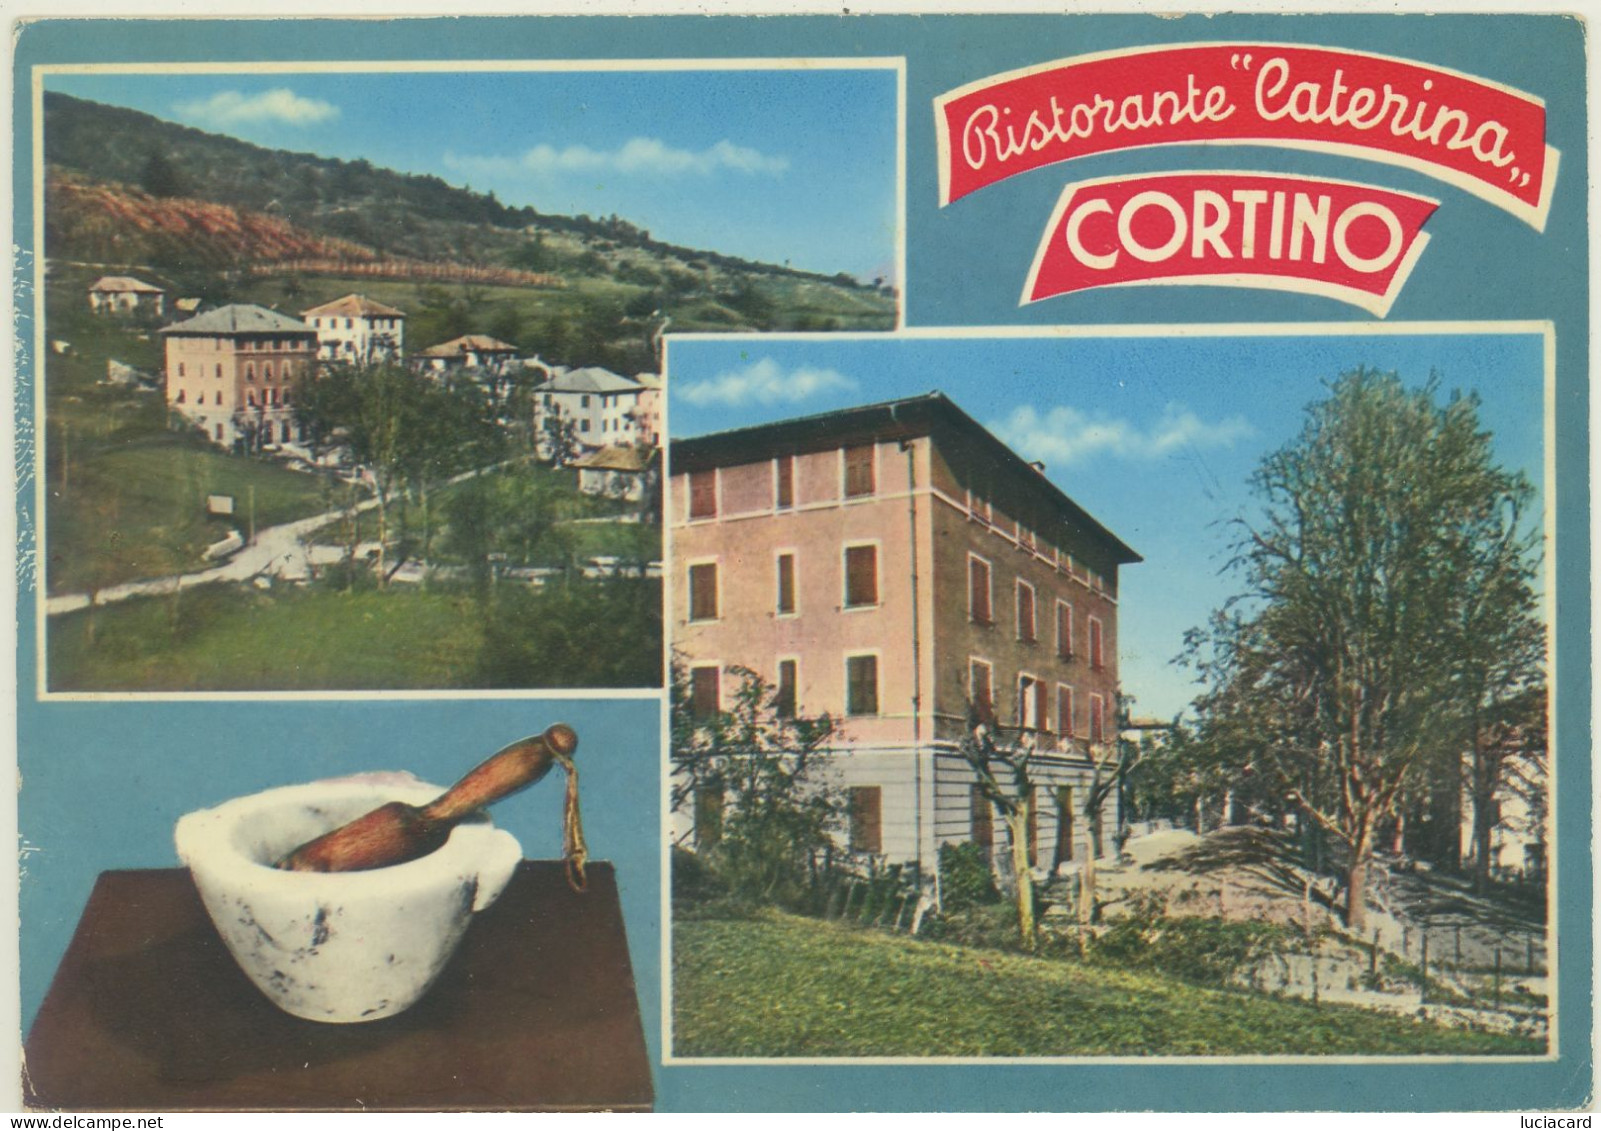 CORTINO DI CASELLA -GENOVA -RISTORANTE CATERINA - Genova